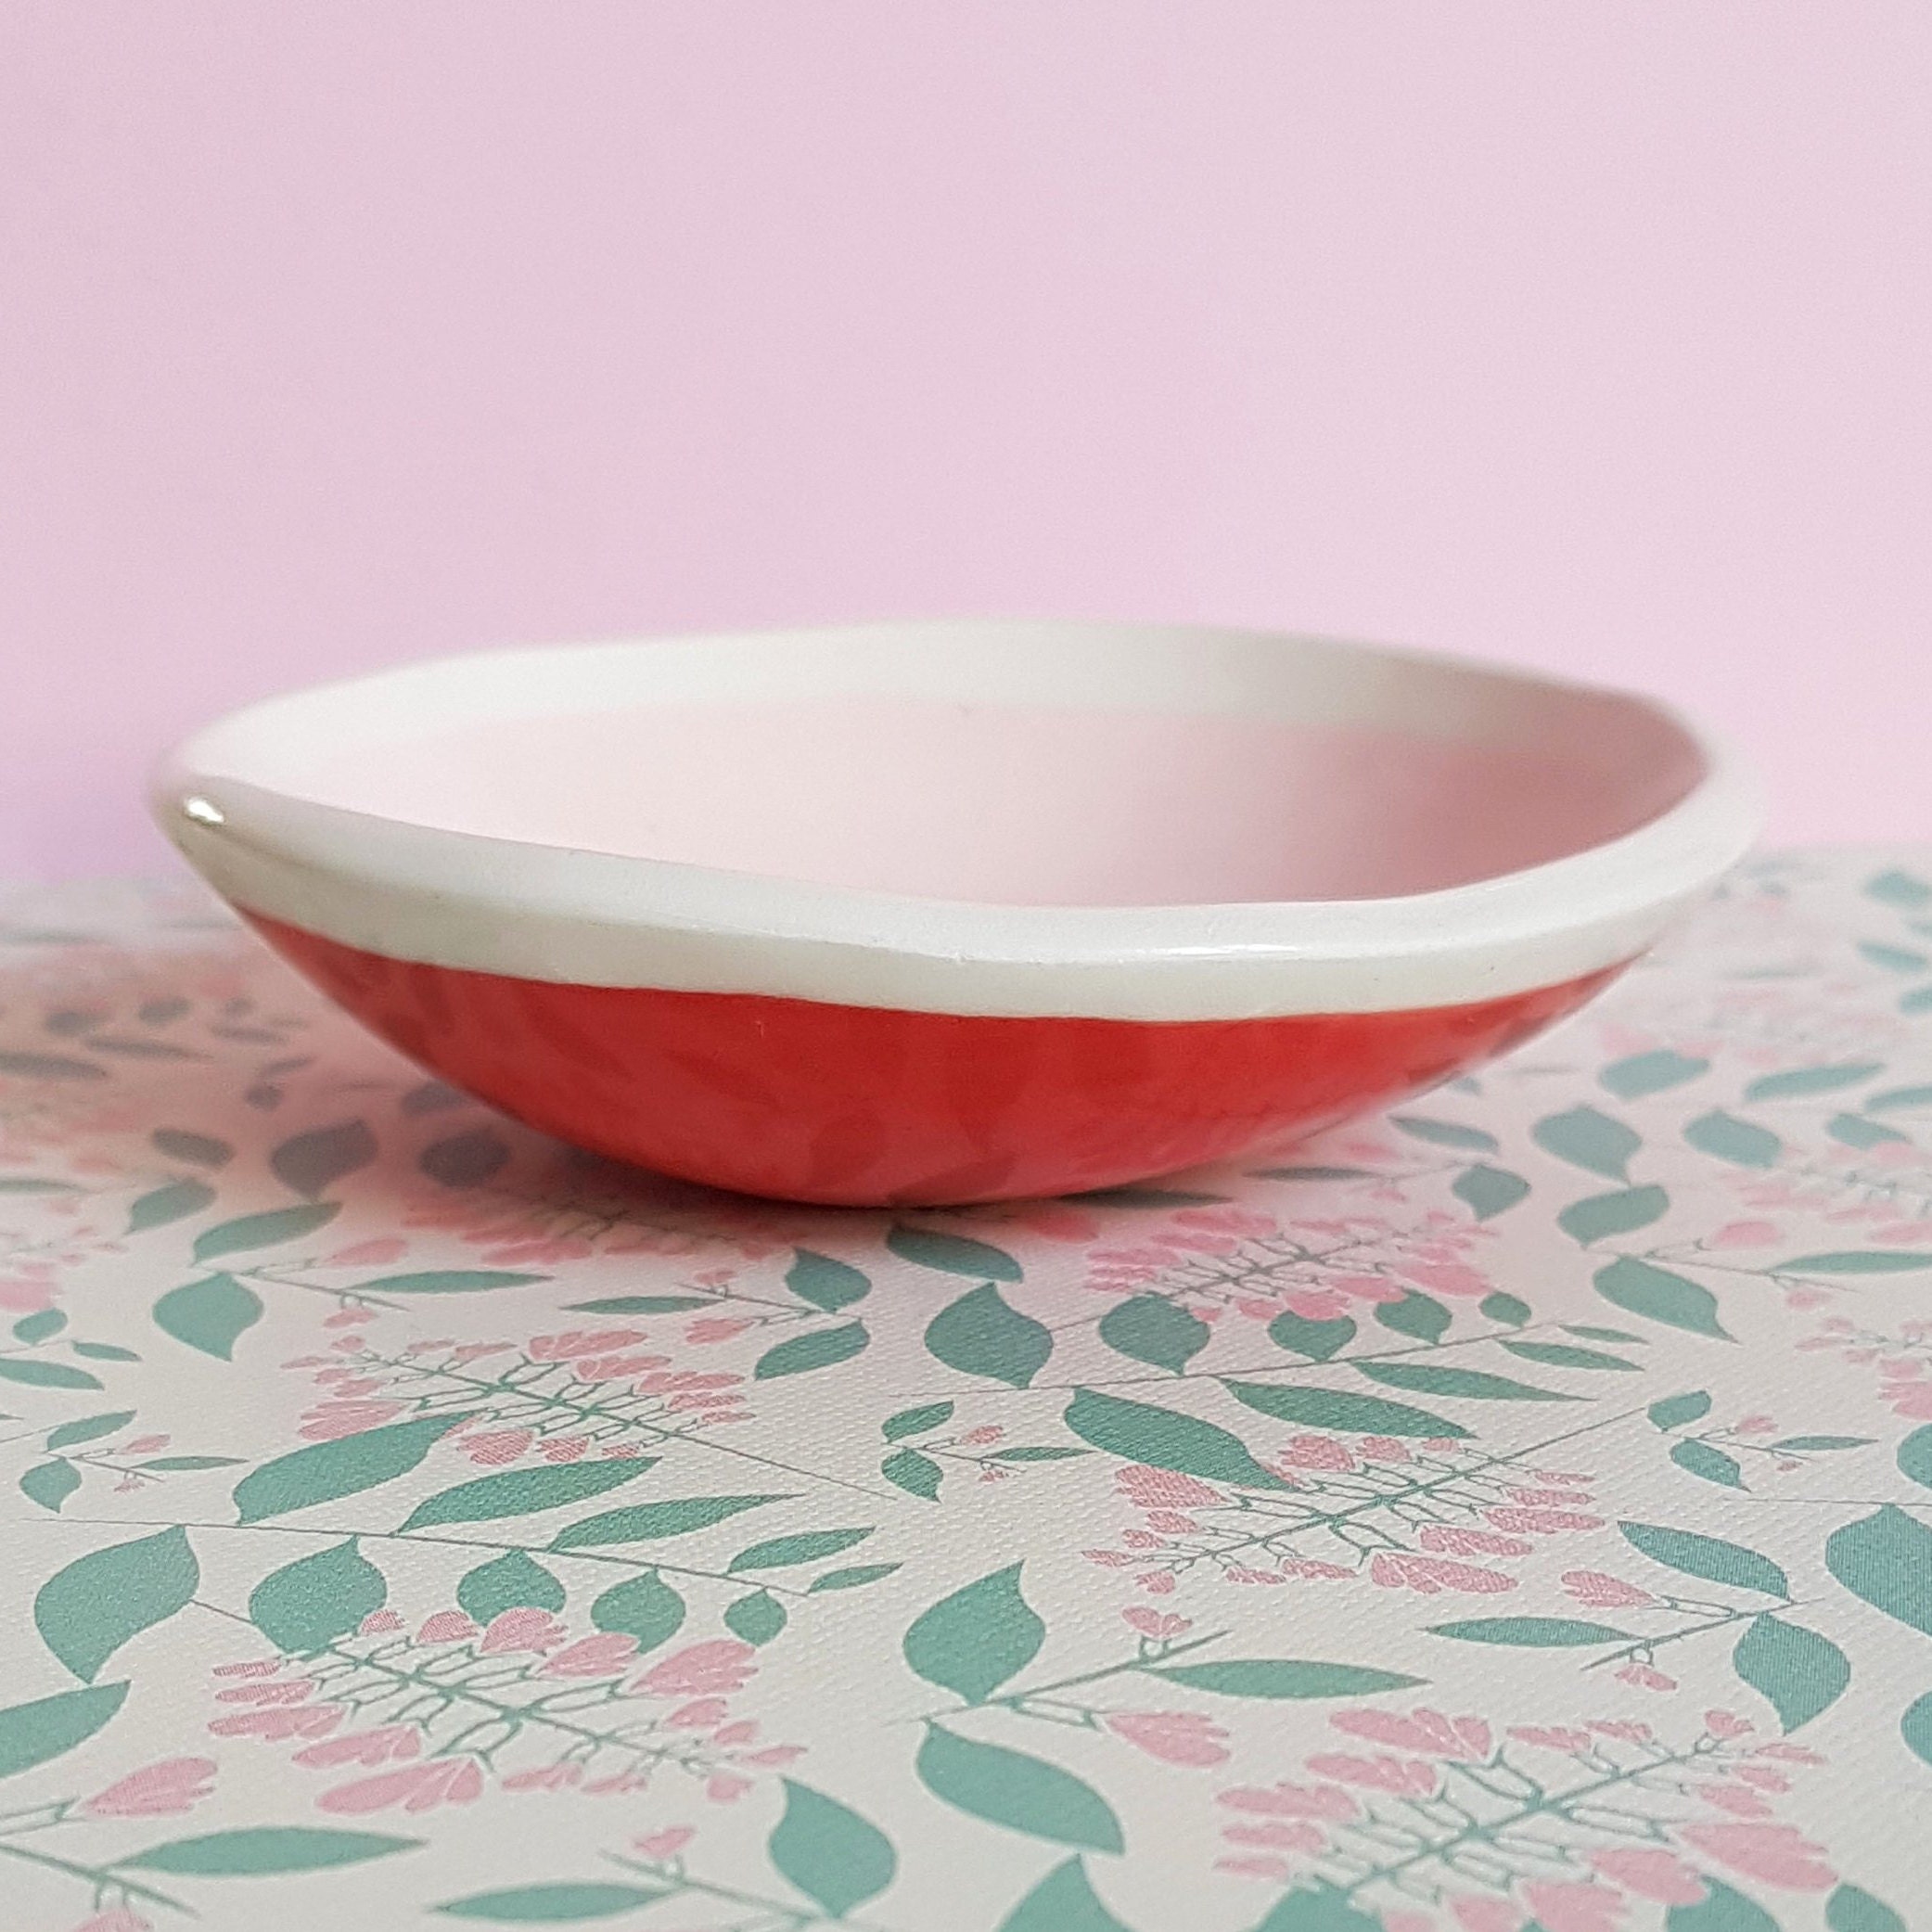 Petite Coupelle Bicolore/Rose Clair - Rouge Foncé Céramique Fait Main Unique Artisanal Table Minikiw